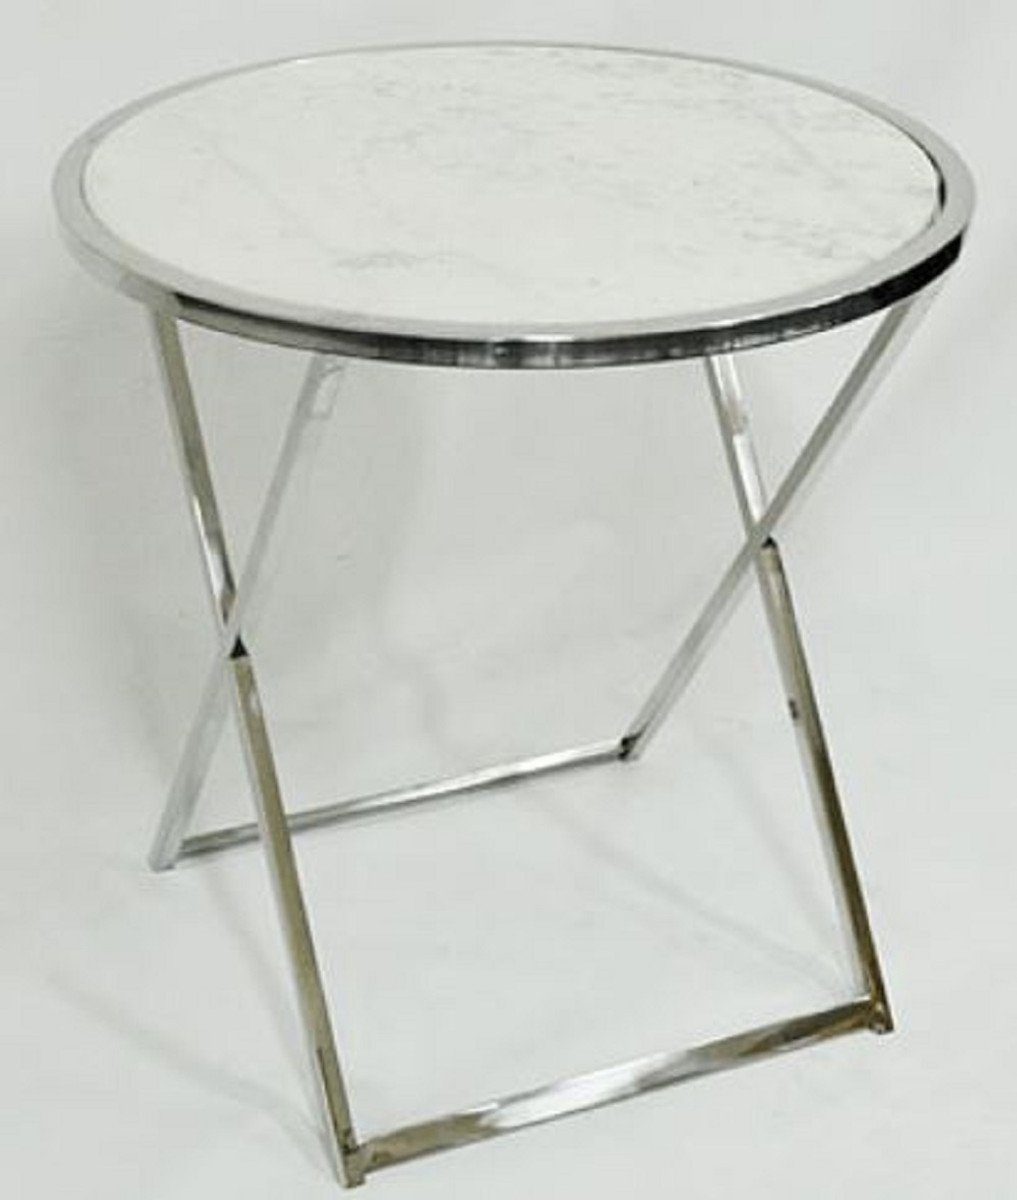 Casa Padrino Beistelltisch Luxus Beistelltisch Silber / Weiß Ø 75 x H. 76 cm - Runder Edelstahl Tisch mit Marmorplatte